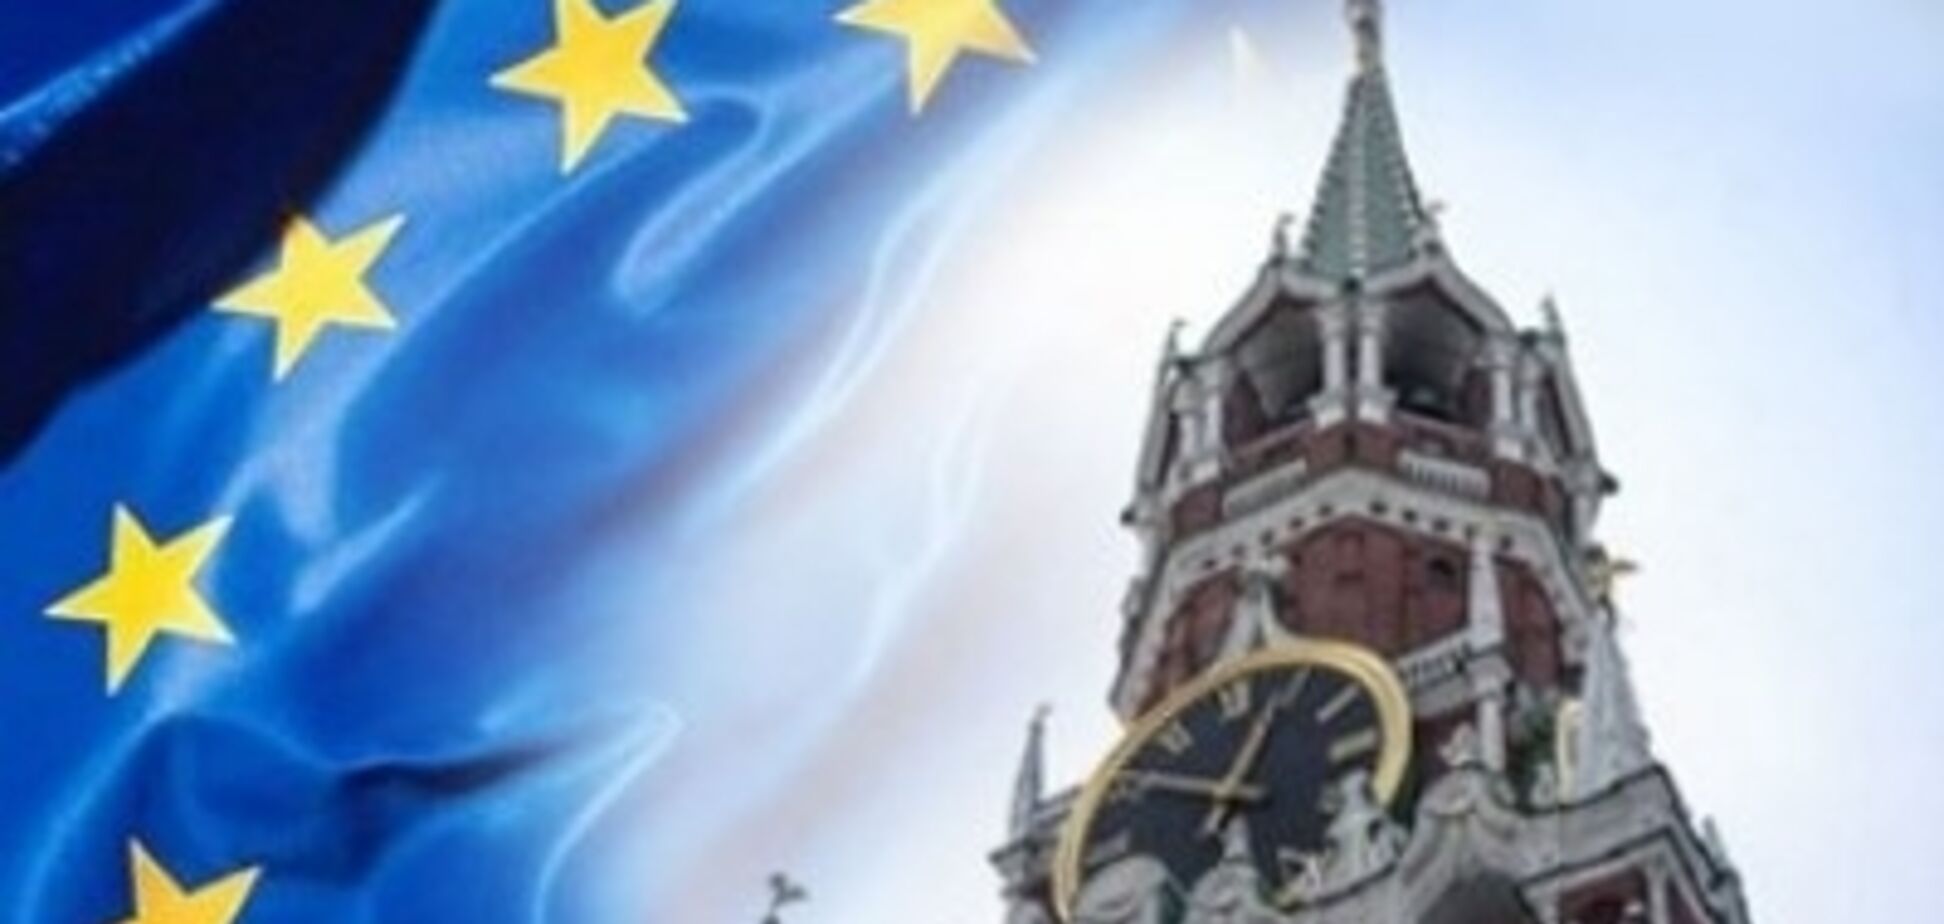 'Як вуж на сковорідці': в Росії нахабно відповіли ЄС через український Крим